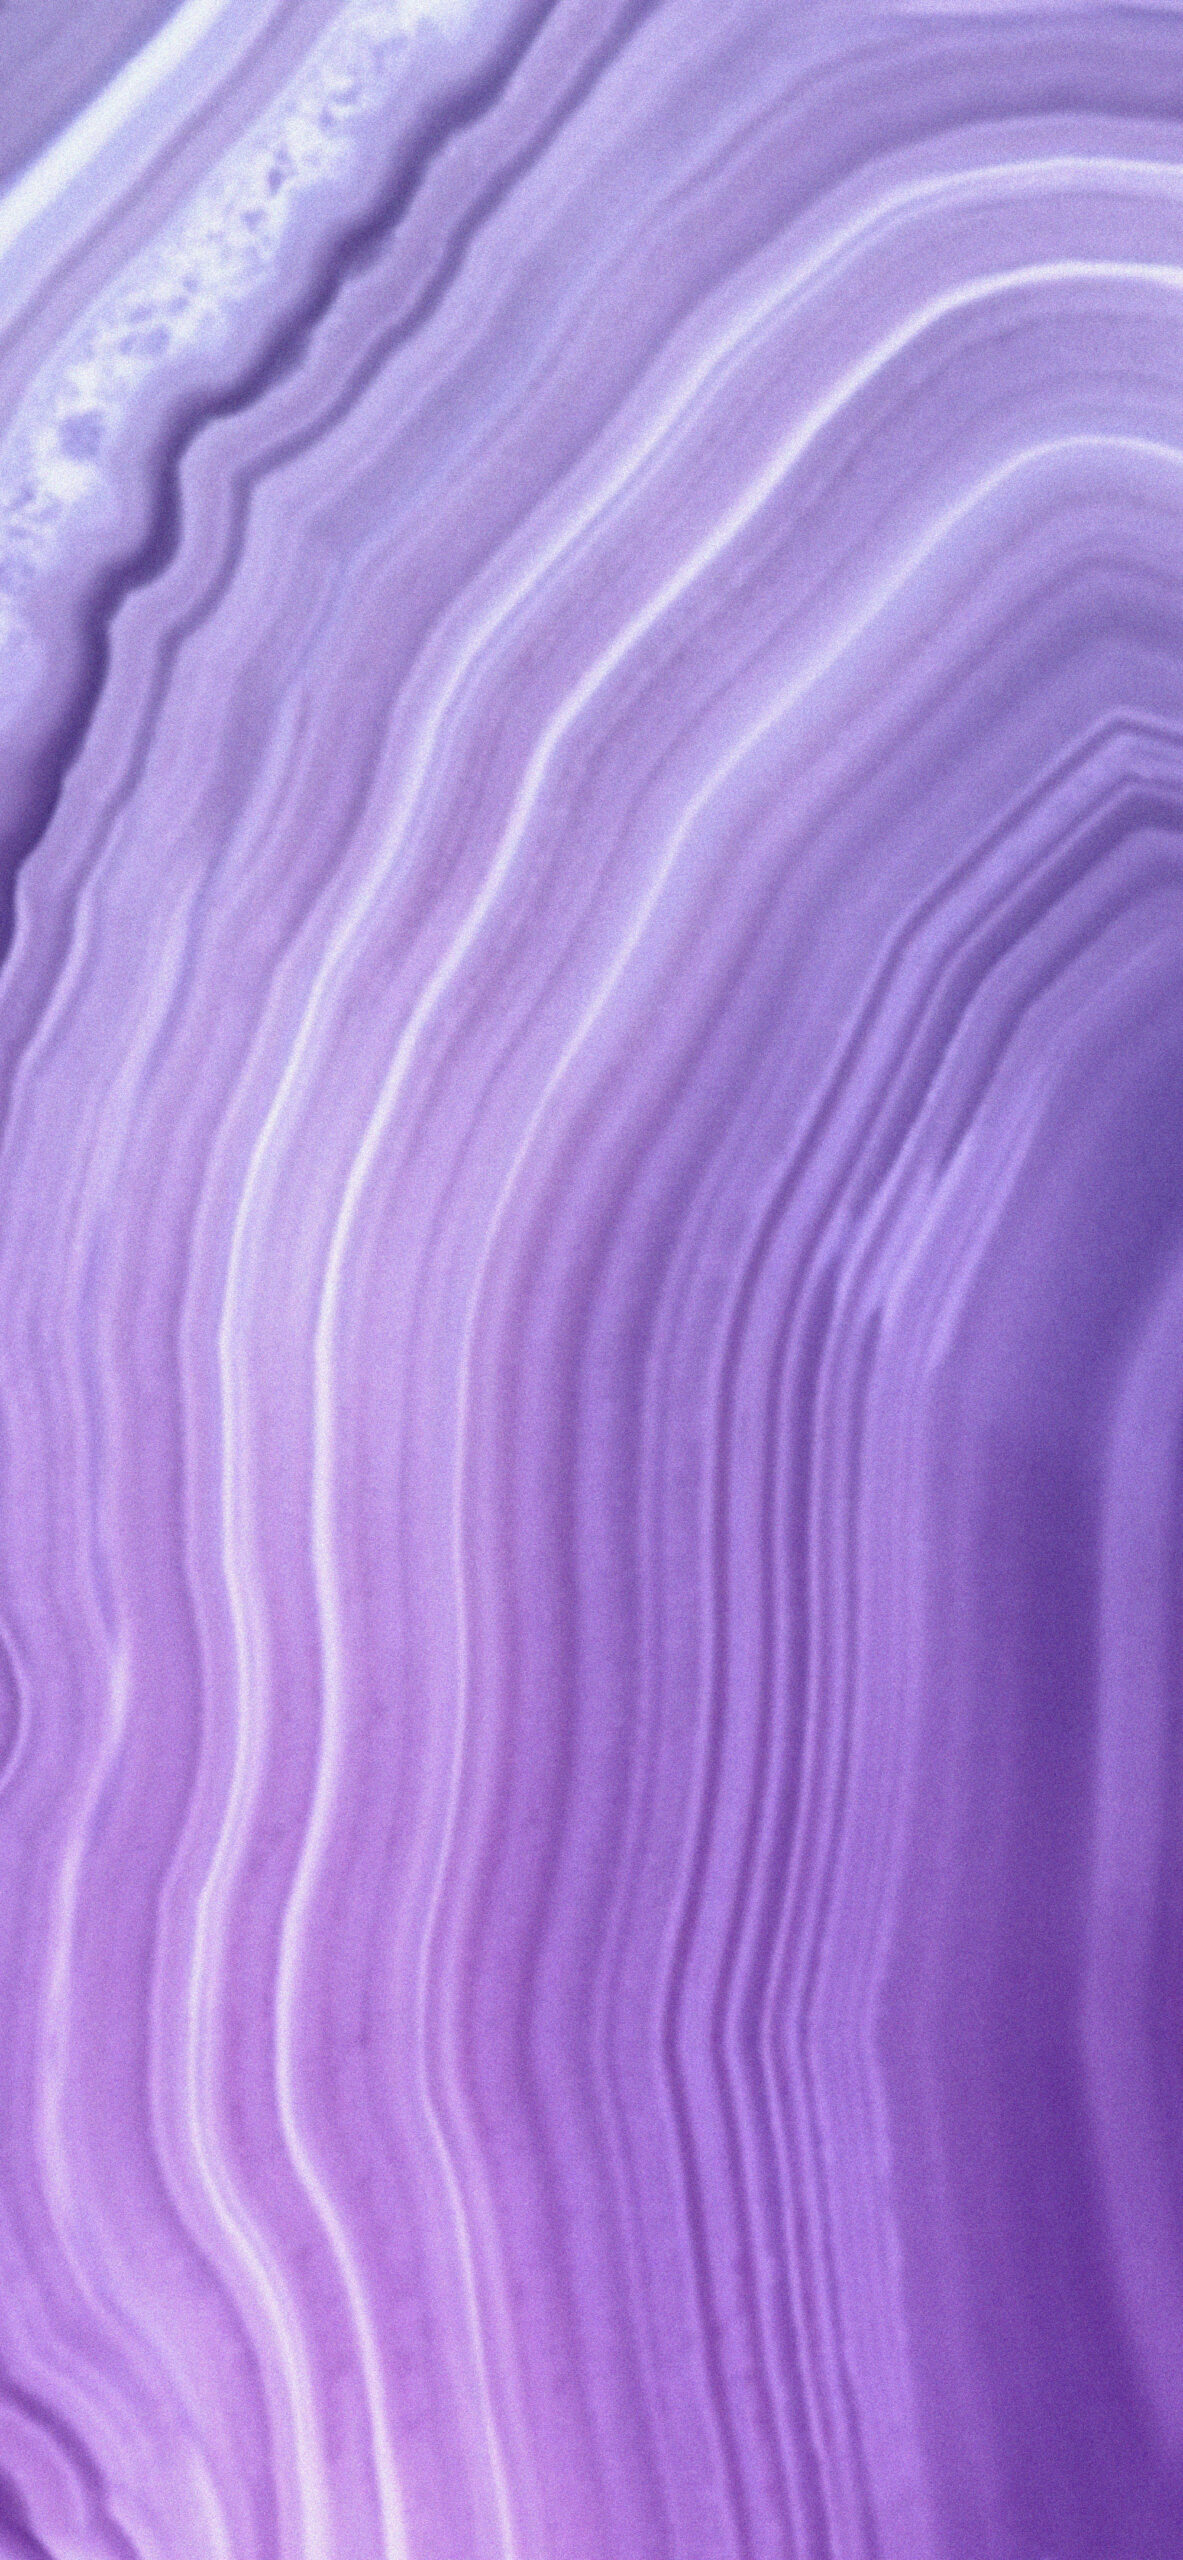 light lavender aesthetic wallpaper 2